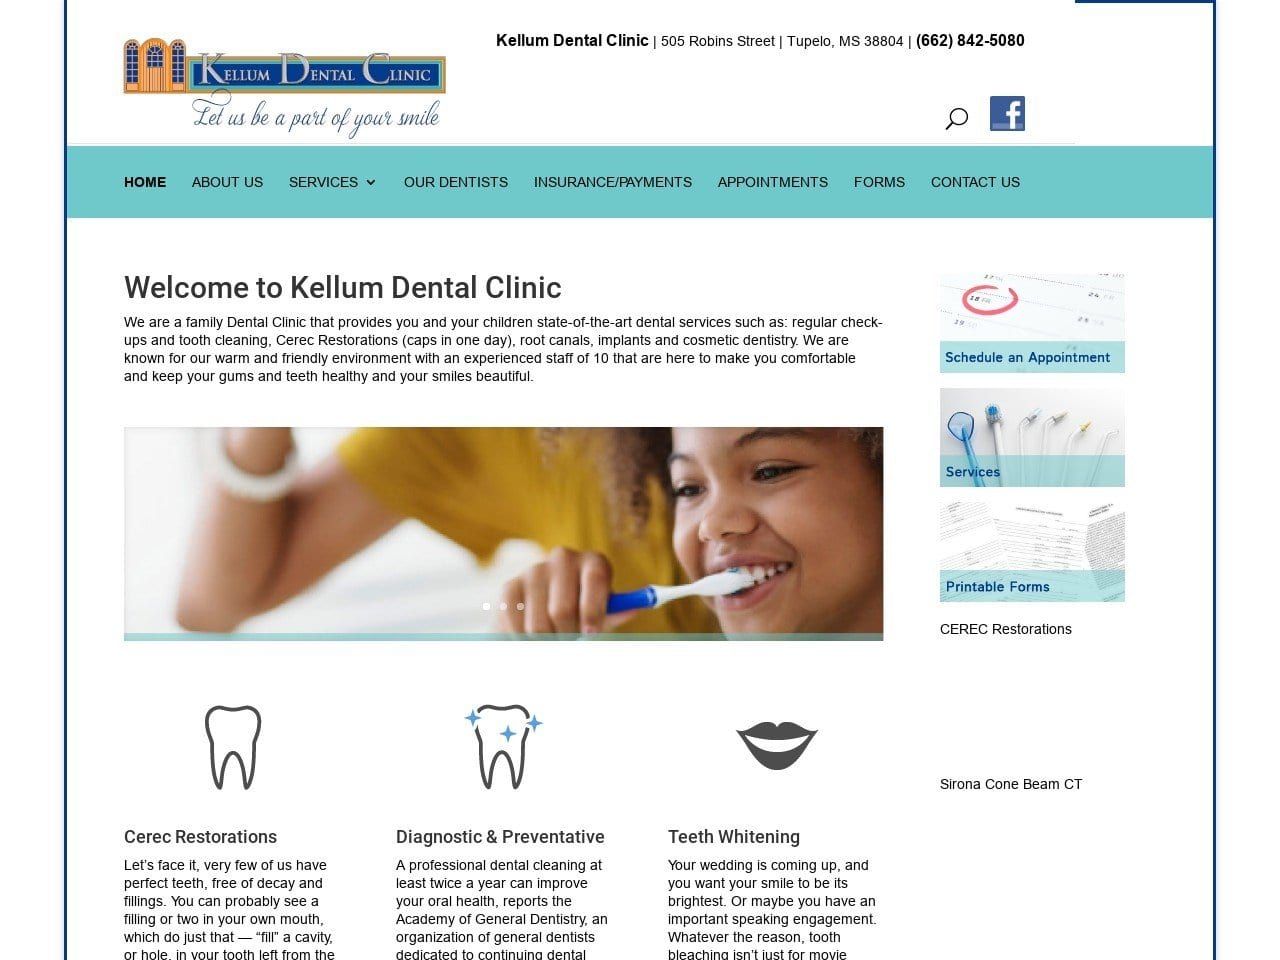 Kellum Dental Website Screenshot from kellumdental.com